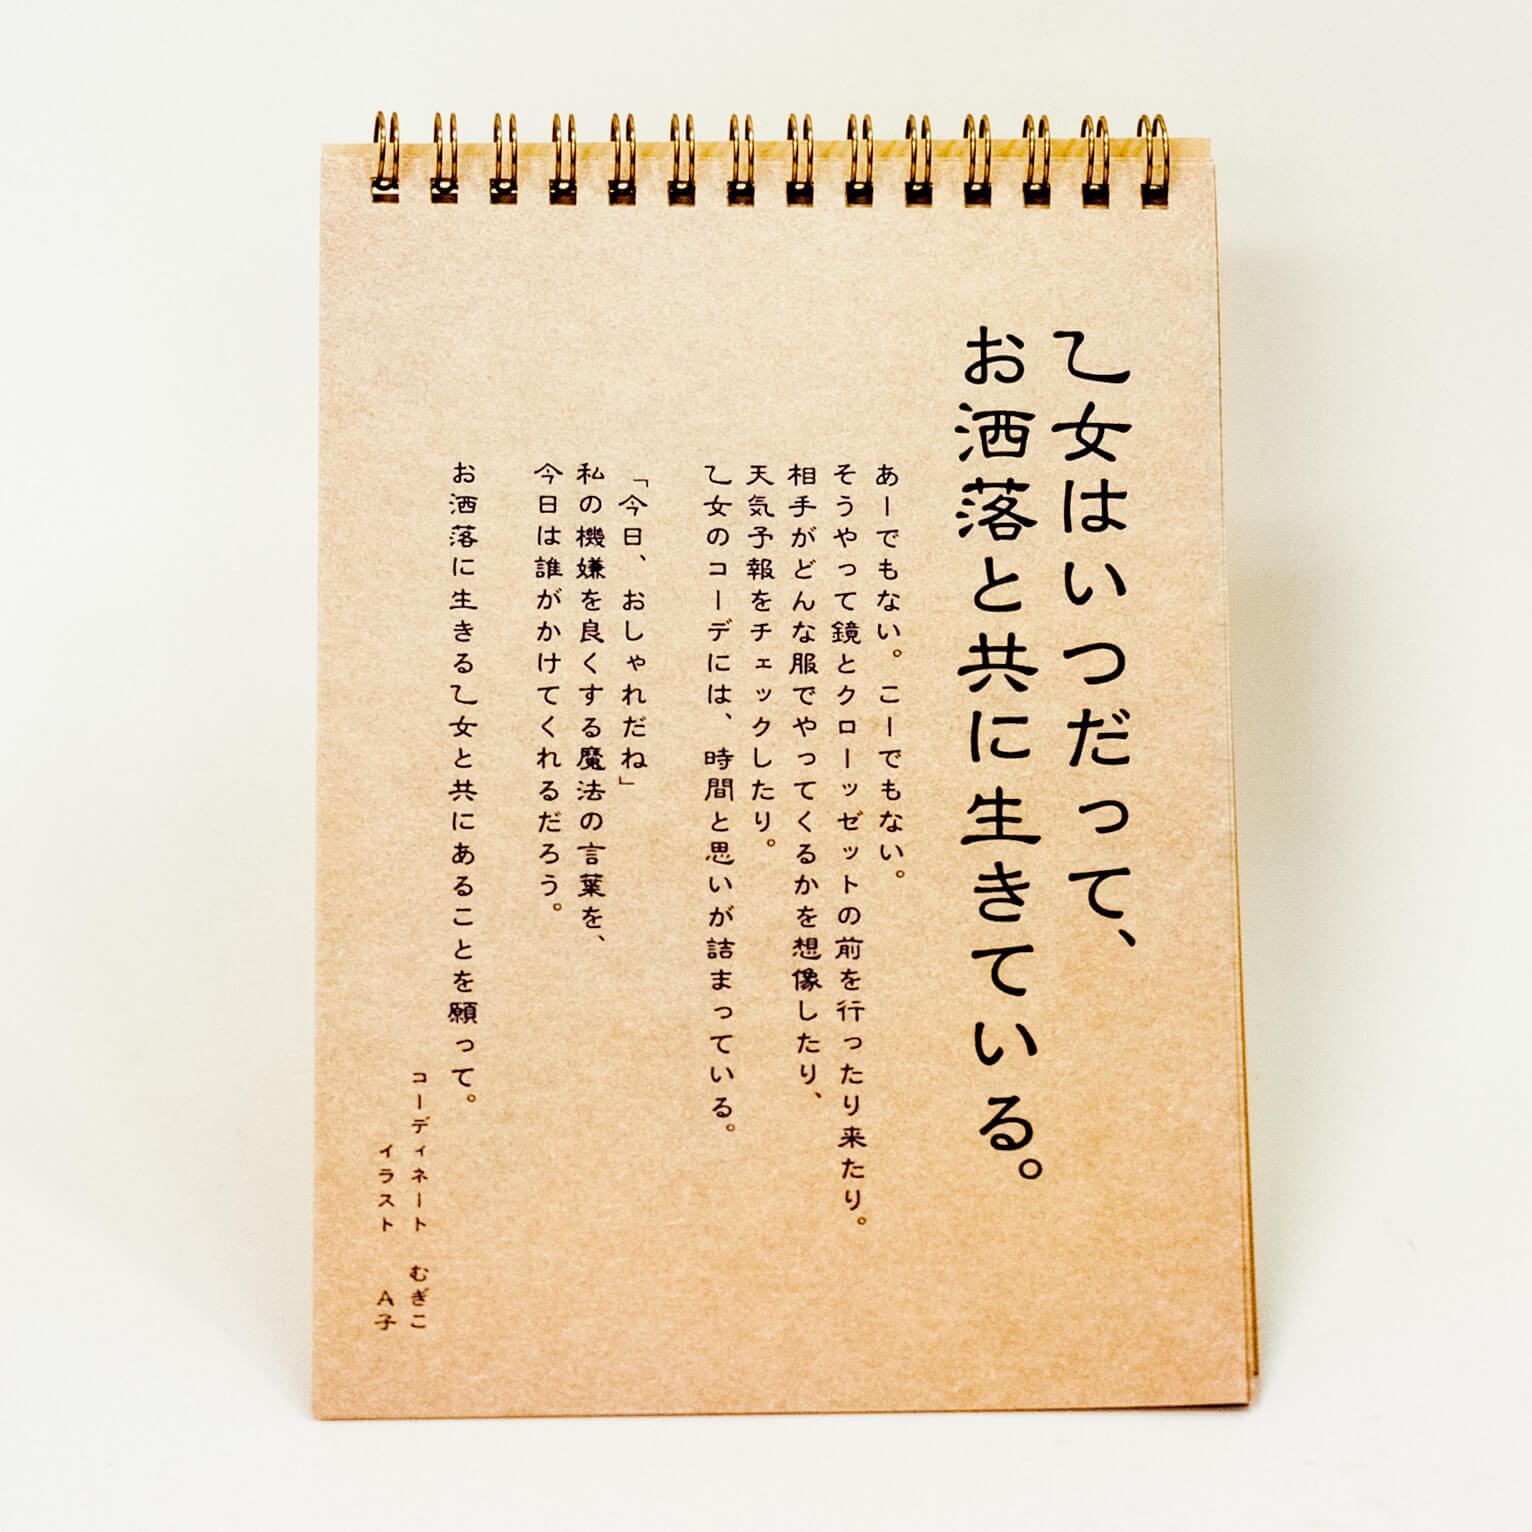 「松尾  春香 様」製作のリング製本冊子